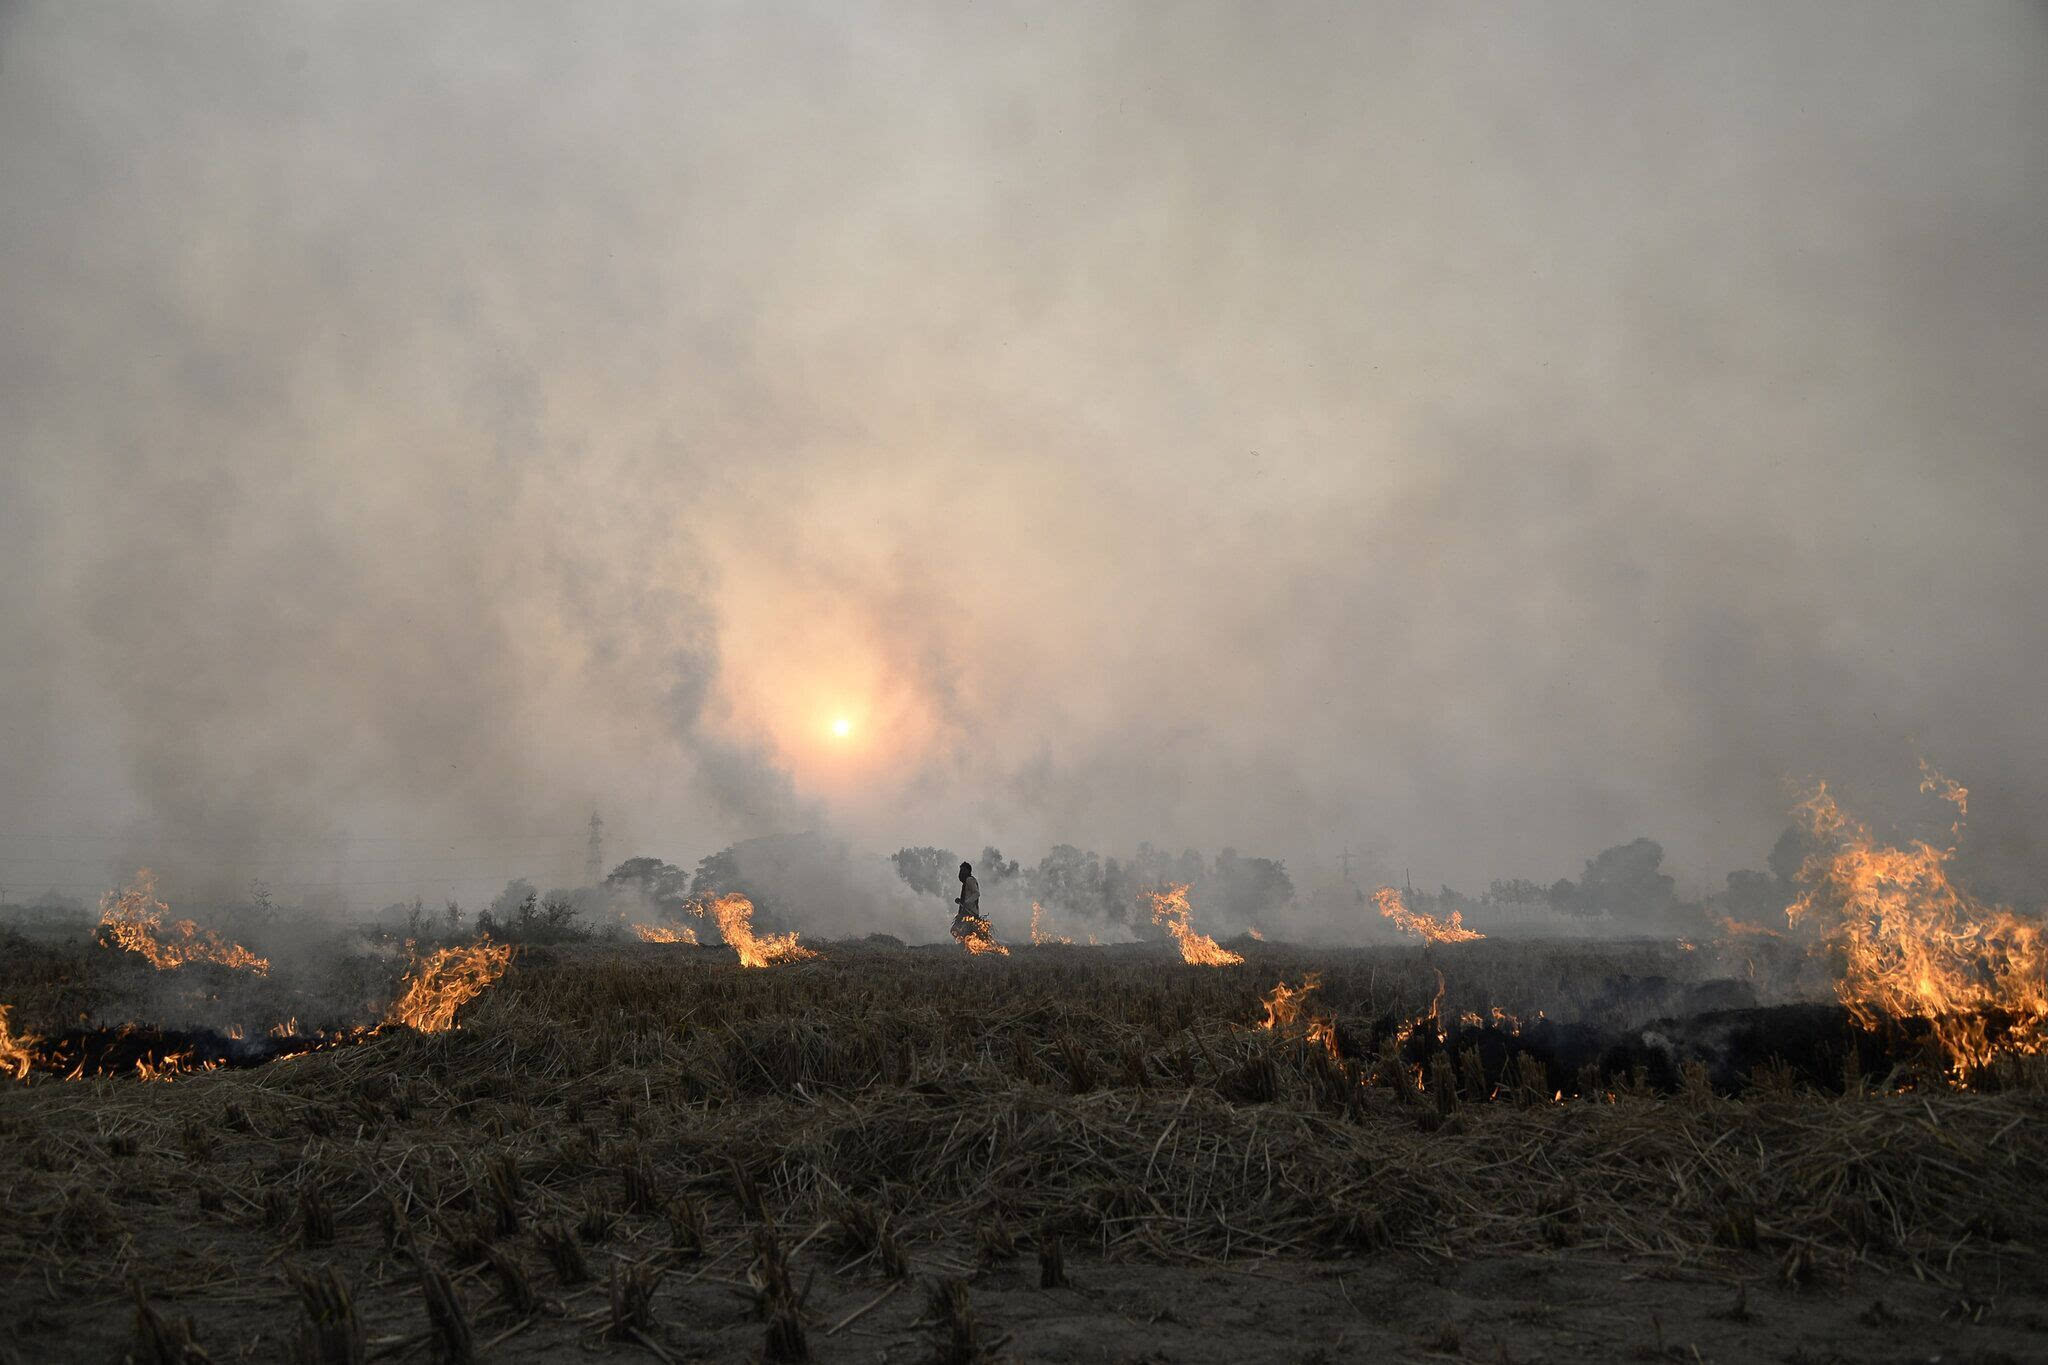 印度治污行动忽略一大污染源:农民焚烧秸秆